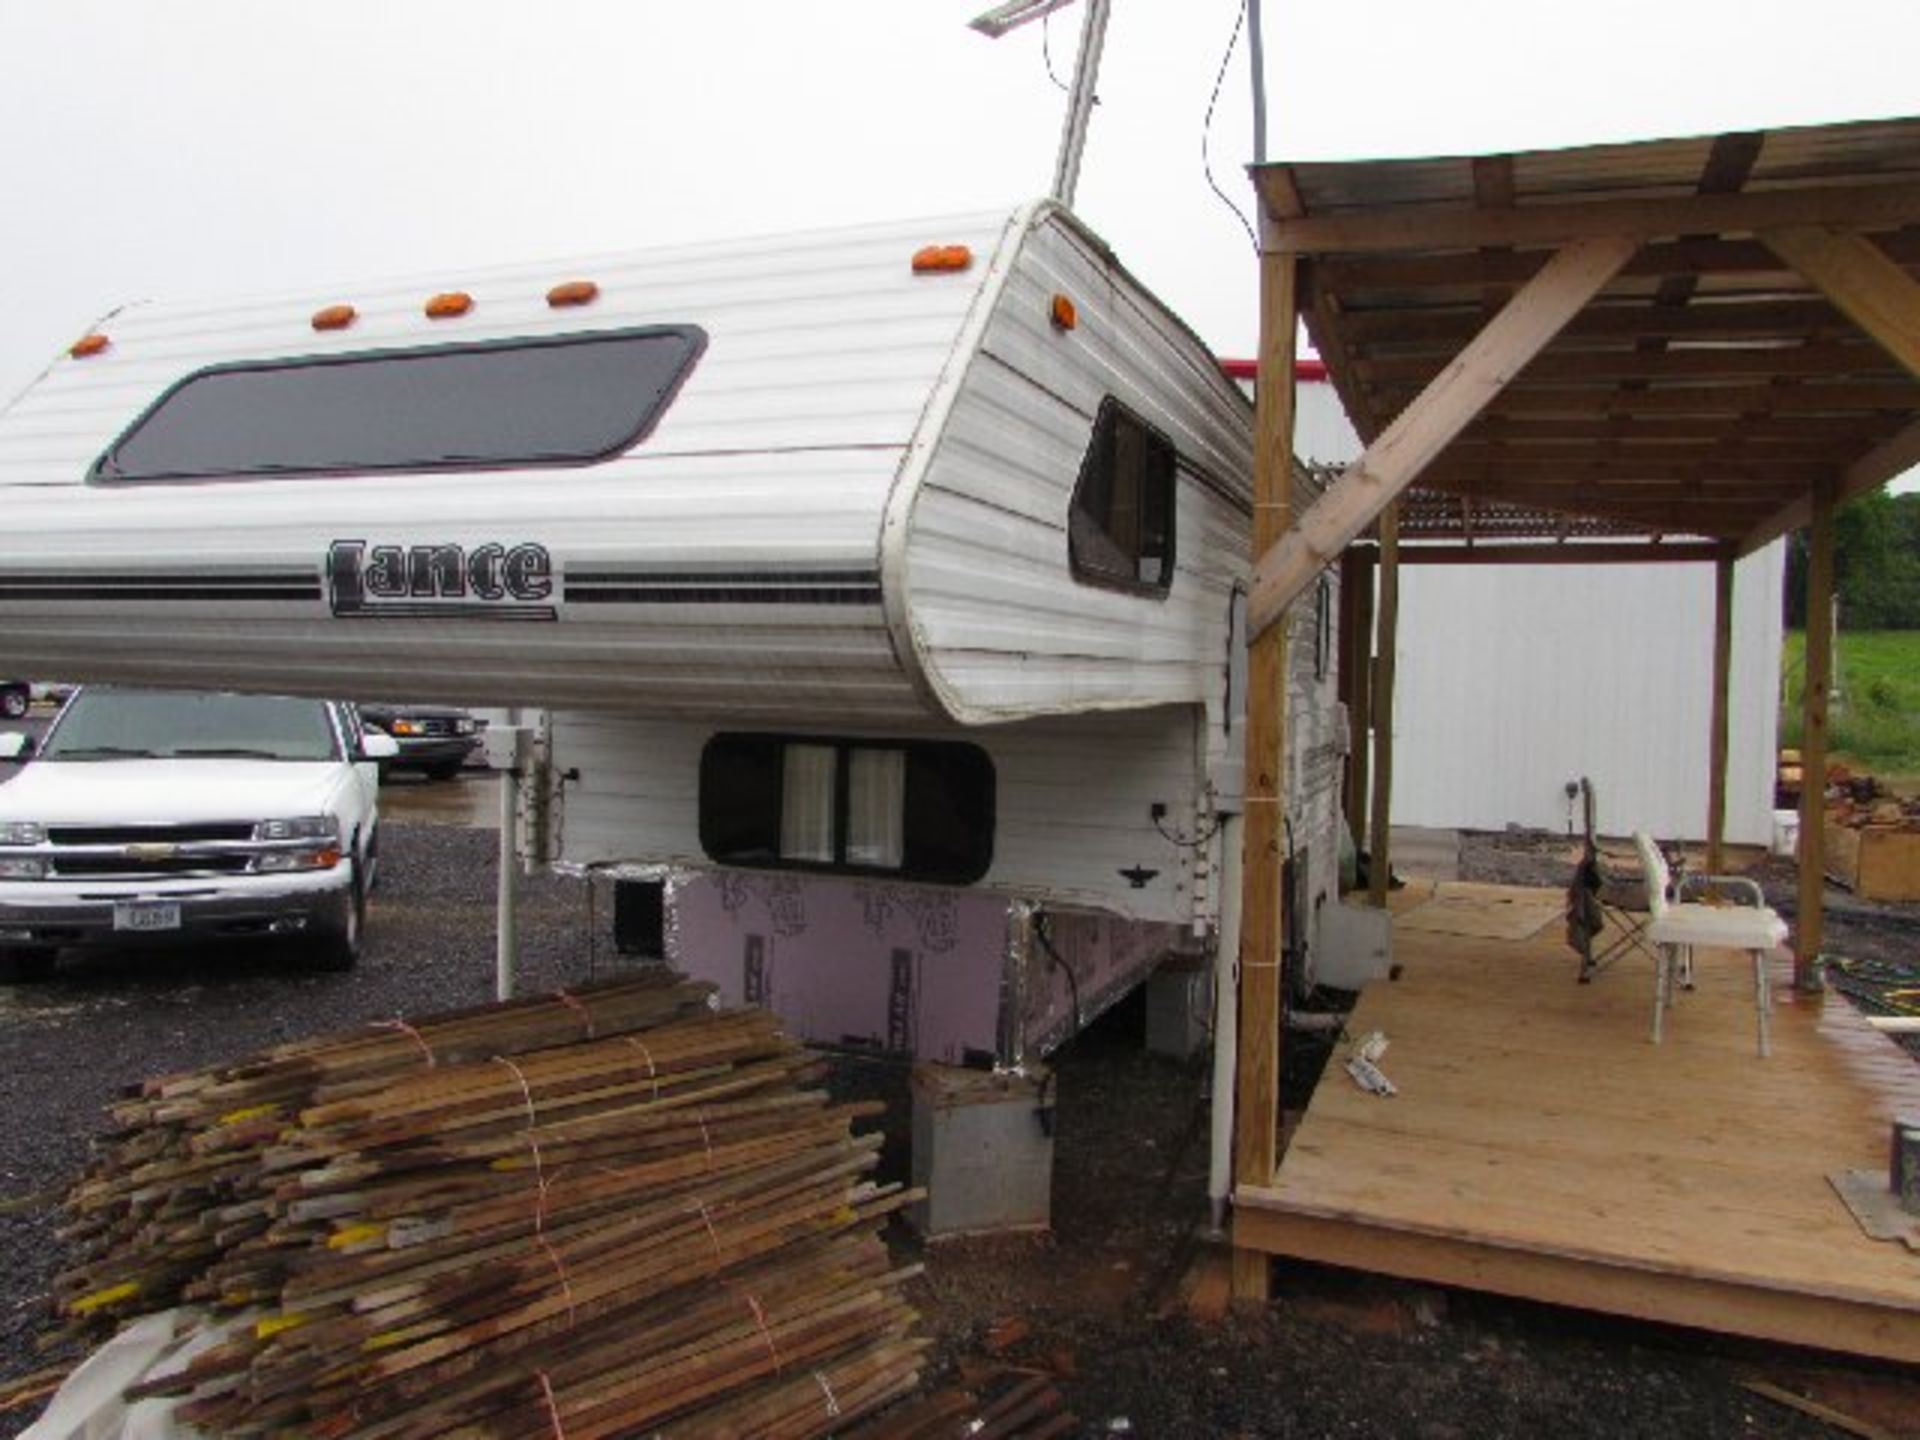 Lance Slide-in Truck Camper, long bed - Image 2 of 2